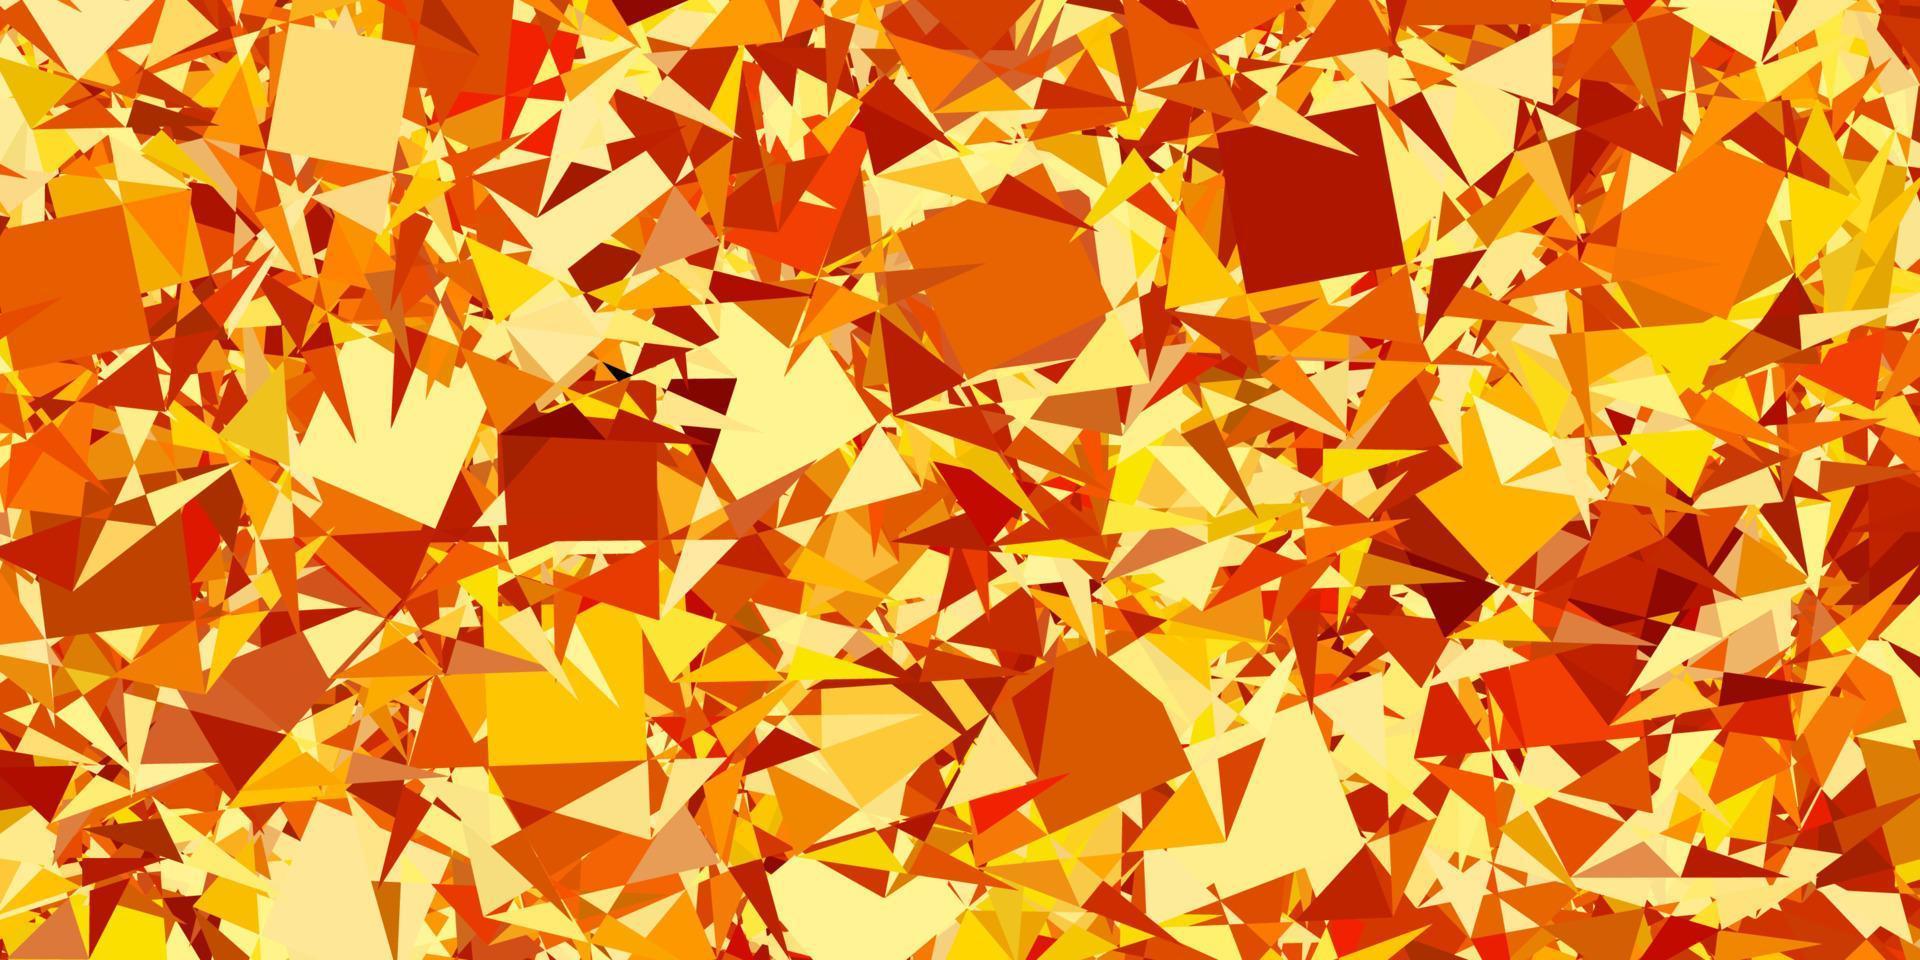 mörk orange vektor bakgrund med trianglar.